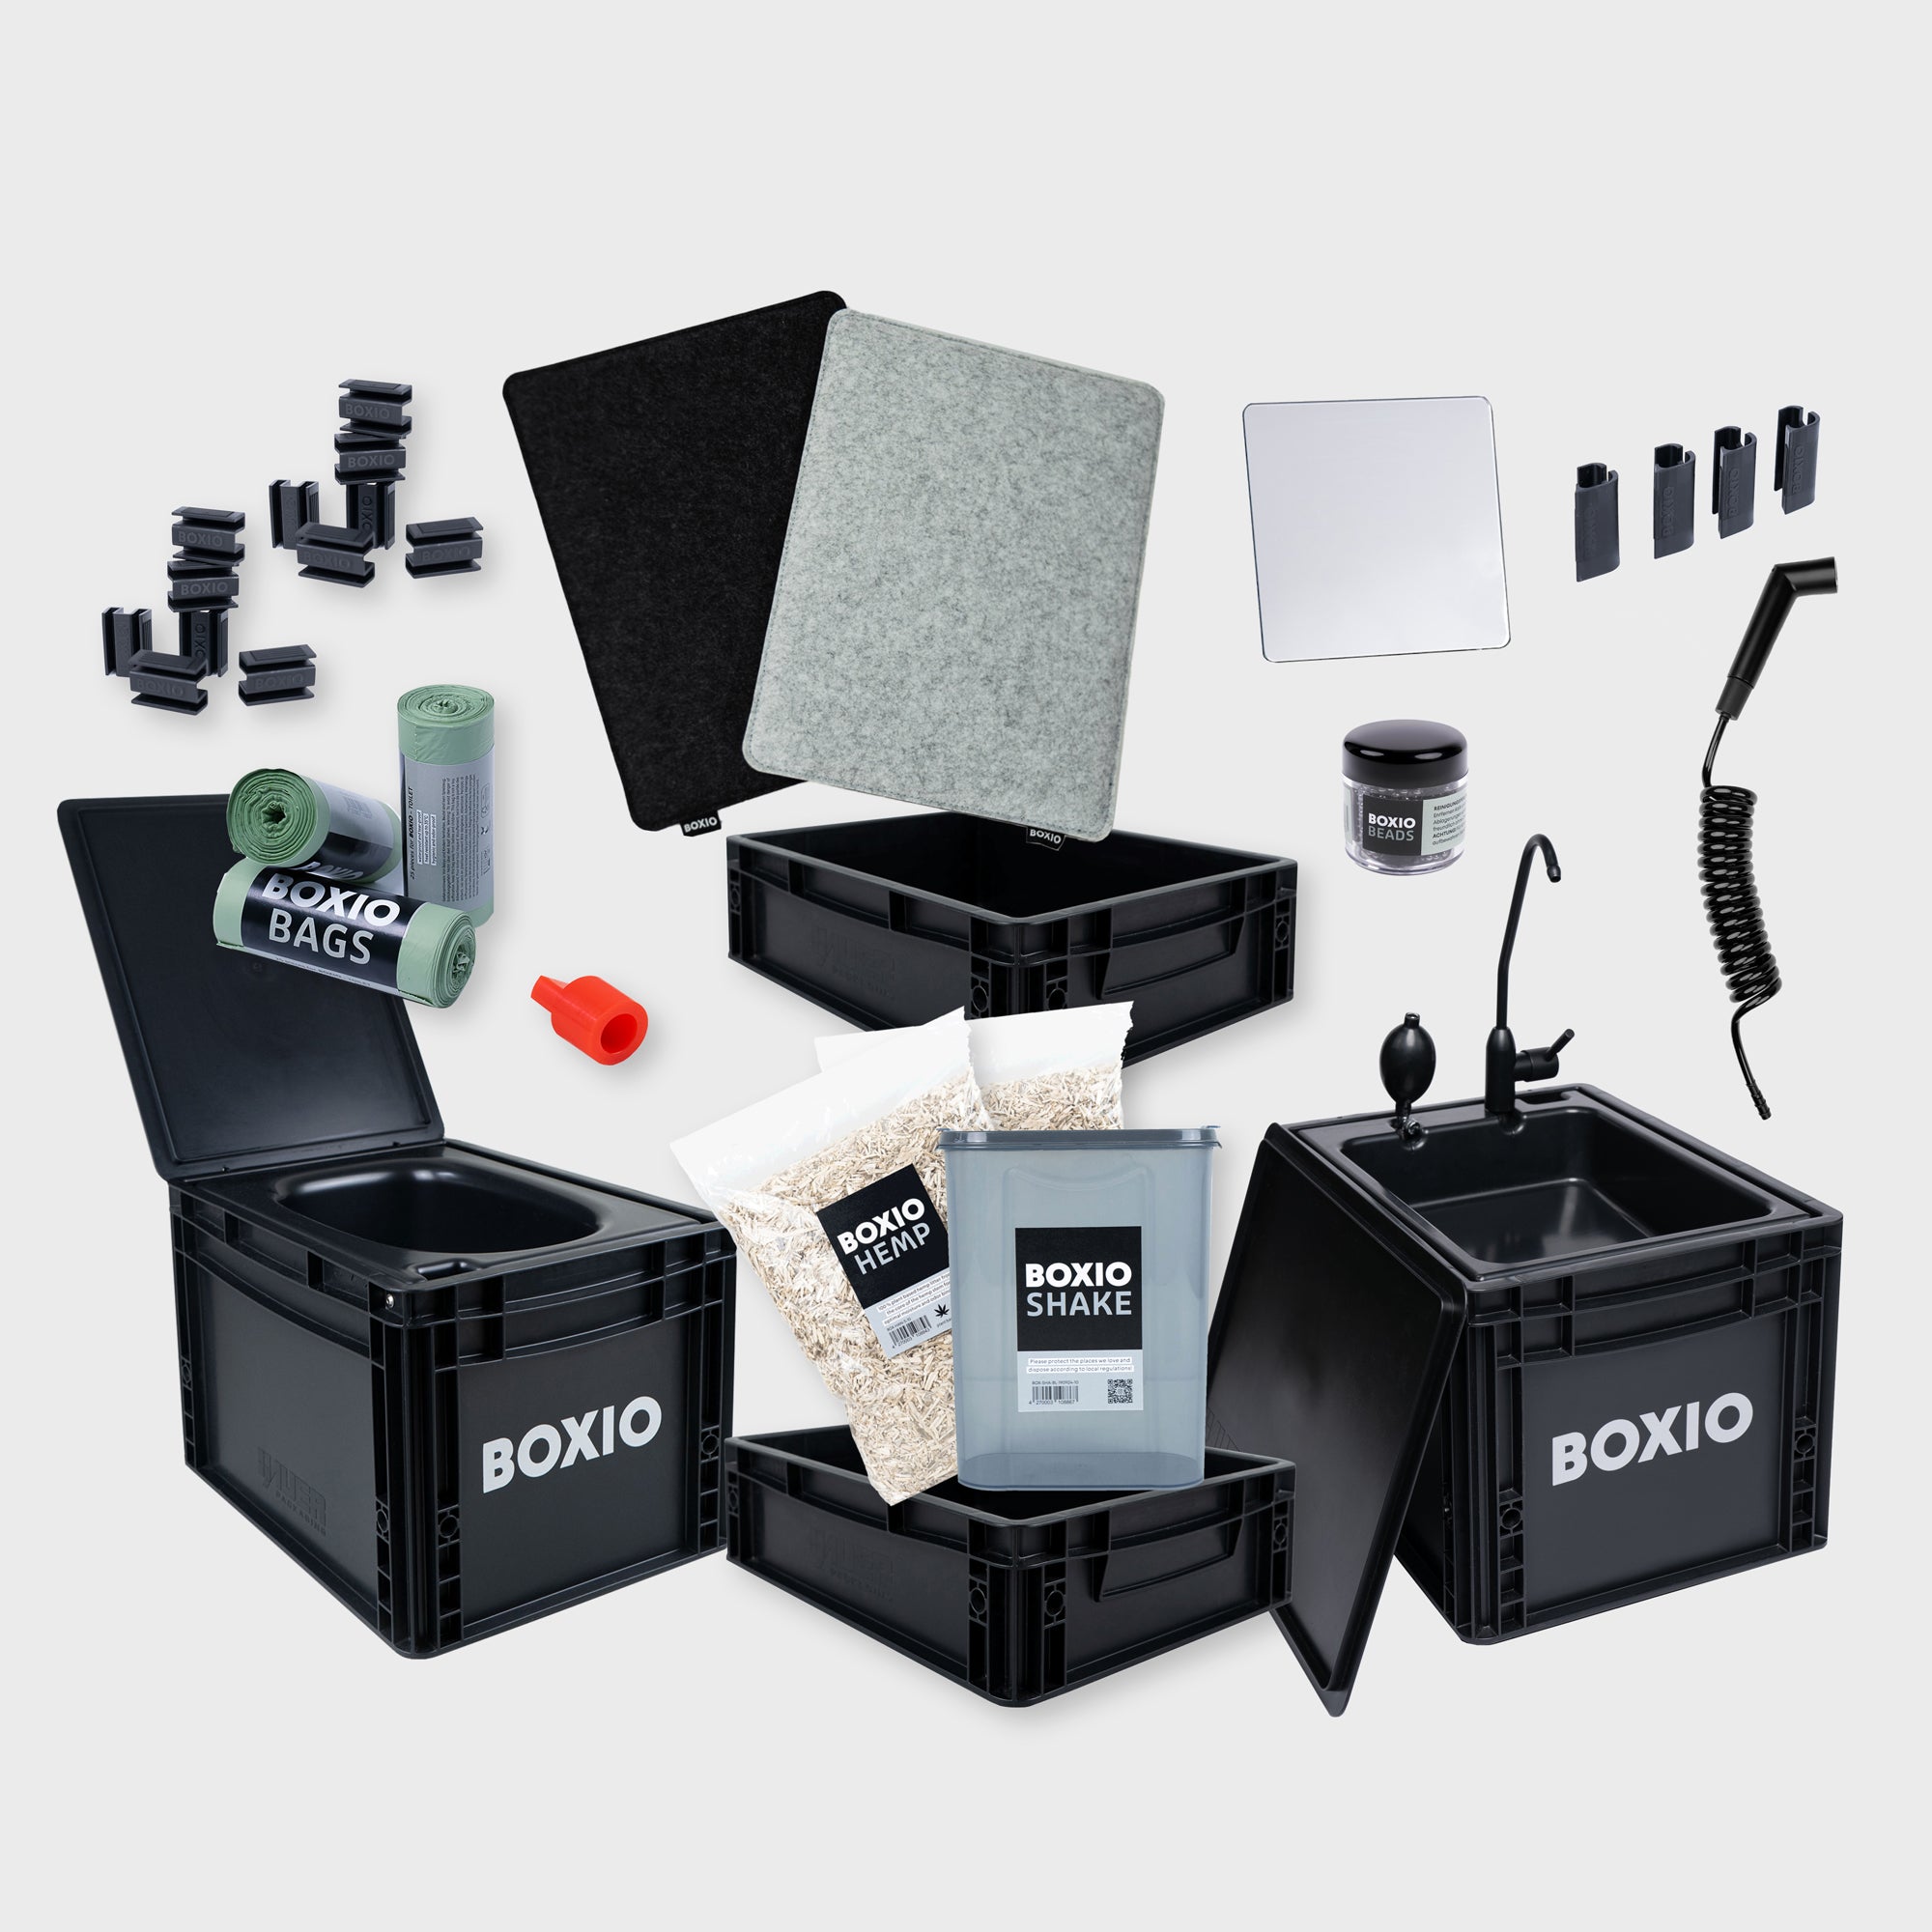 BOXIO - SANITAIR: Complete set met urineverwijderend toilet, mobiele wastafel en accessoires